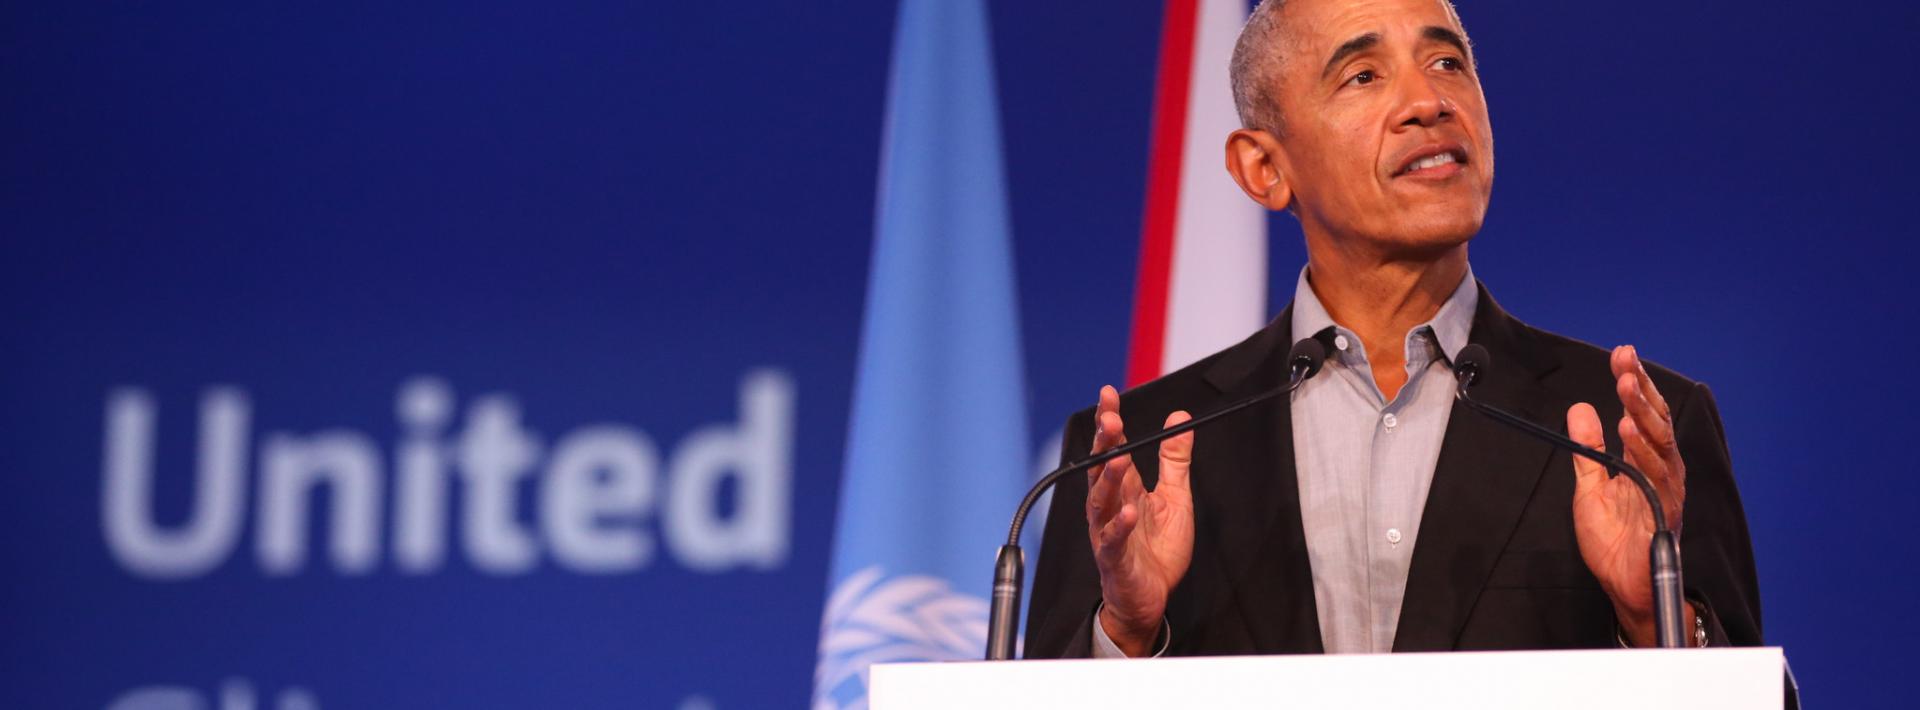 Former US president Barack Obama addresses young people at COP26 / Credit: UNFCCC